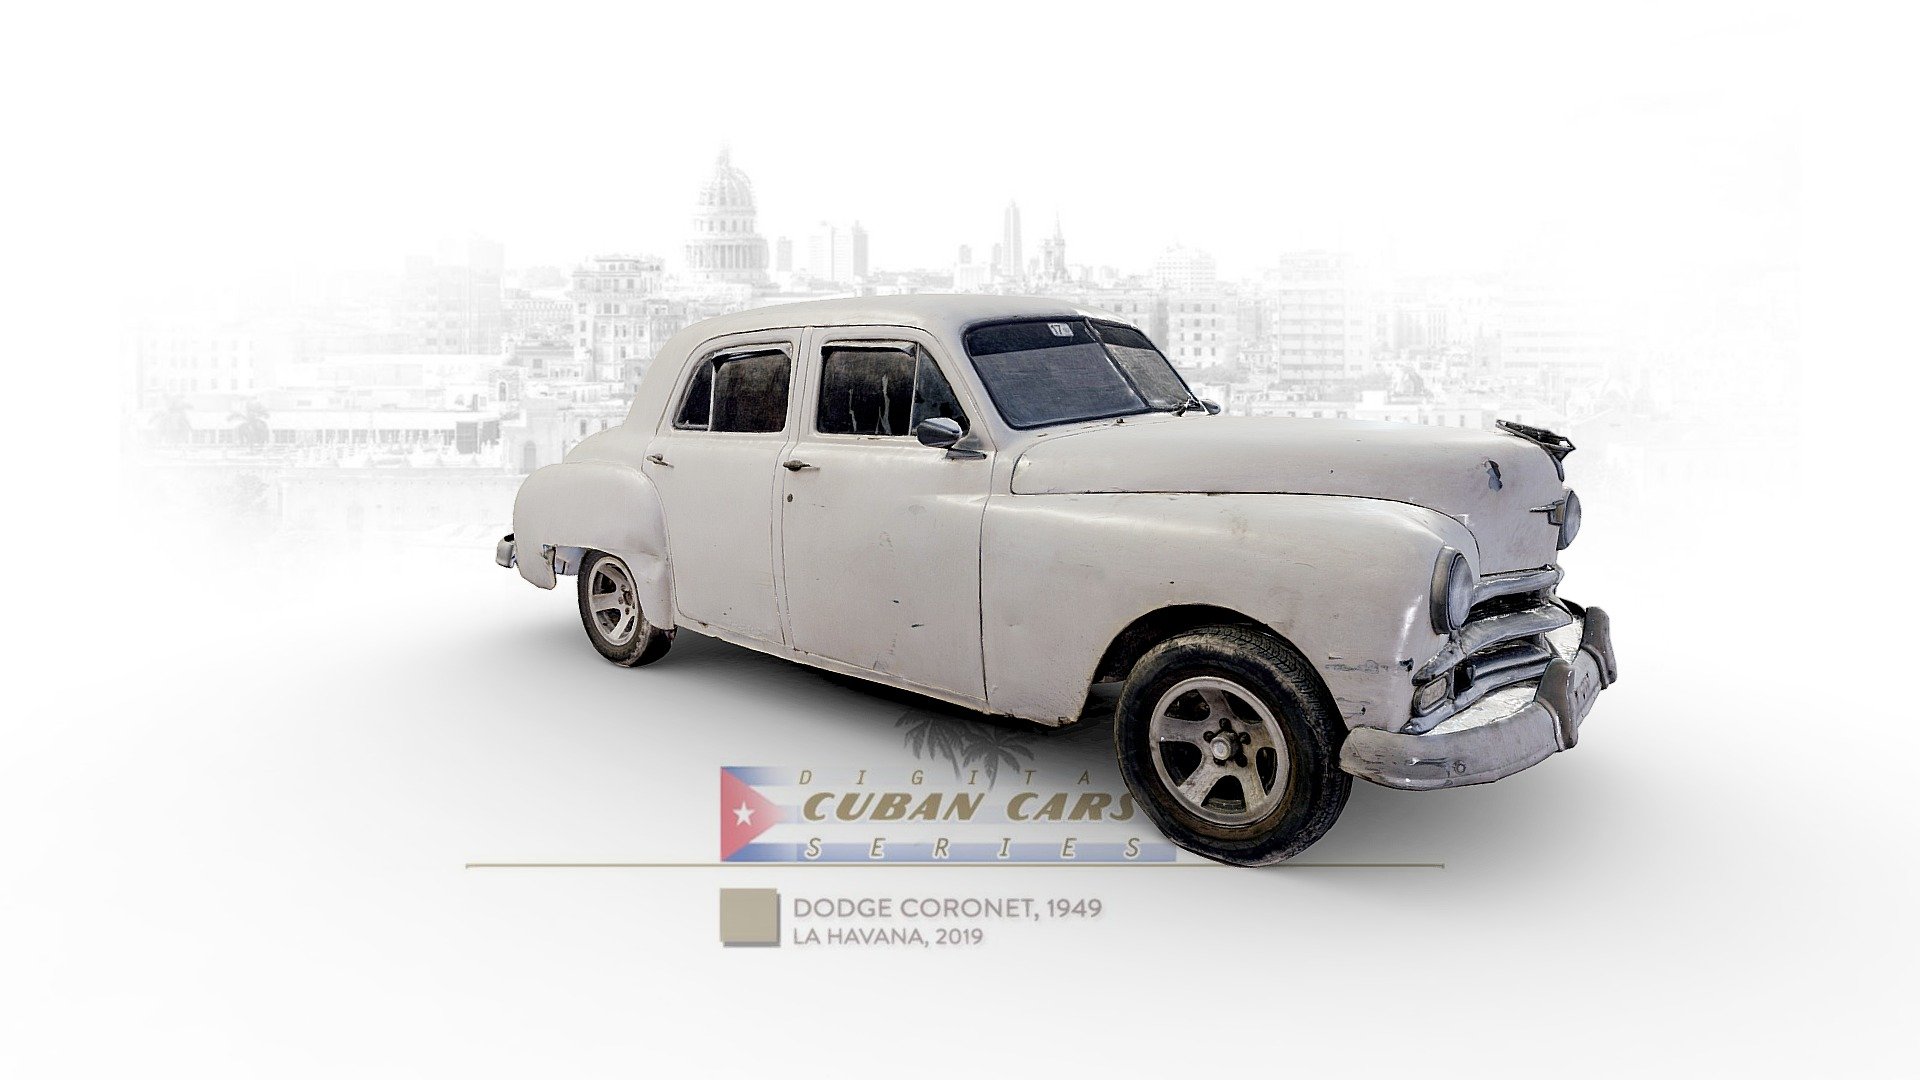 Dodge Coronet (1949) in La Havana